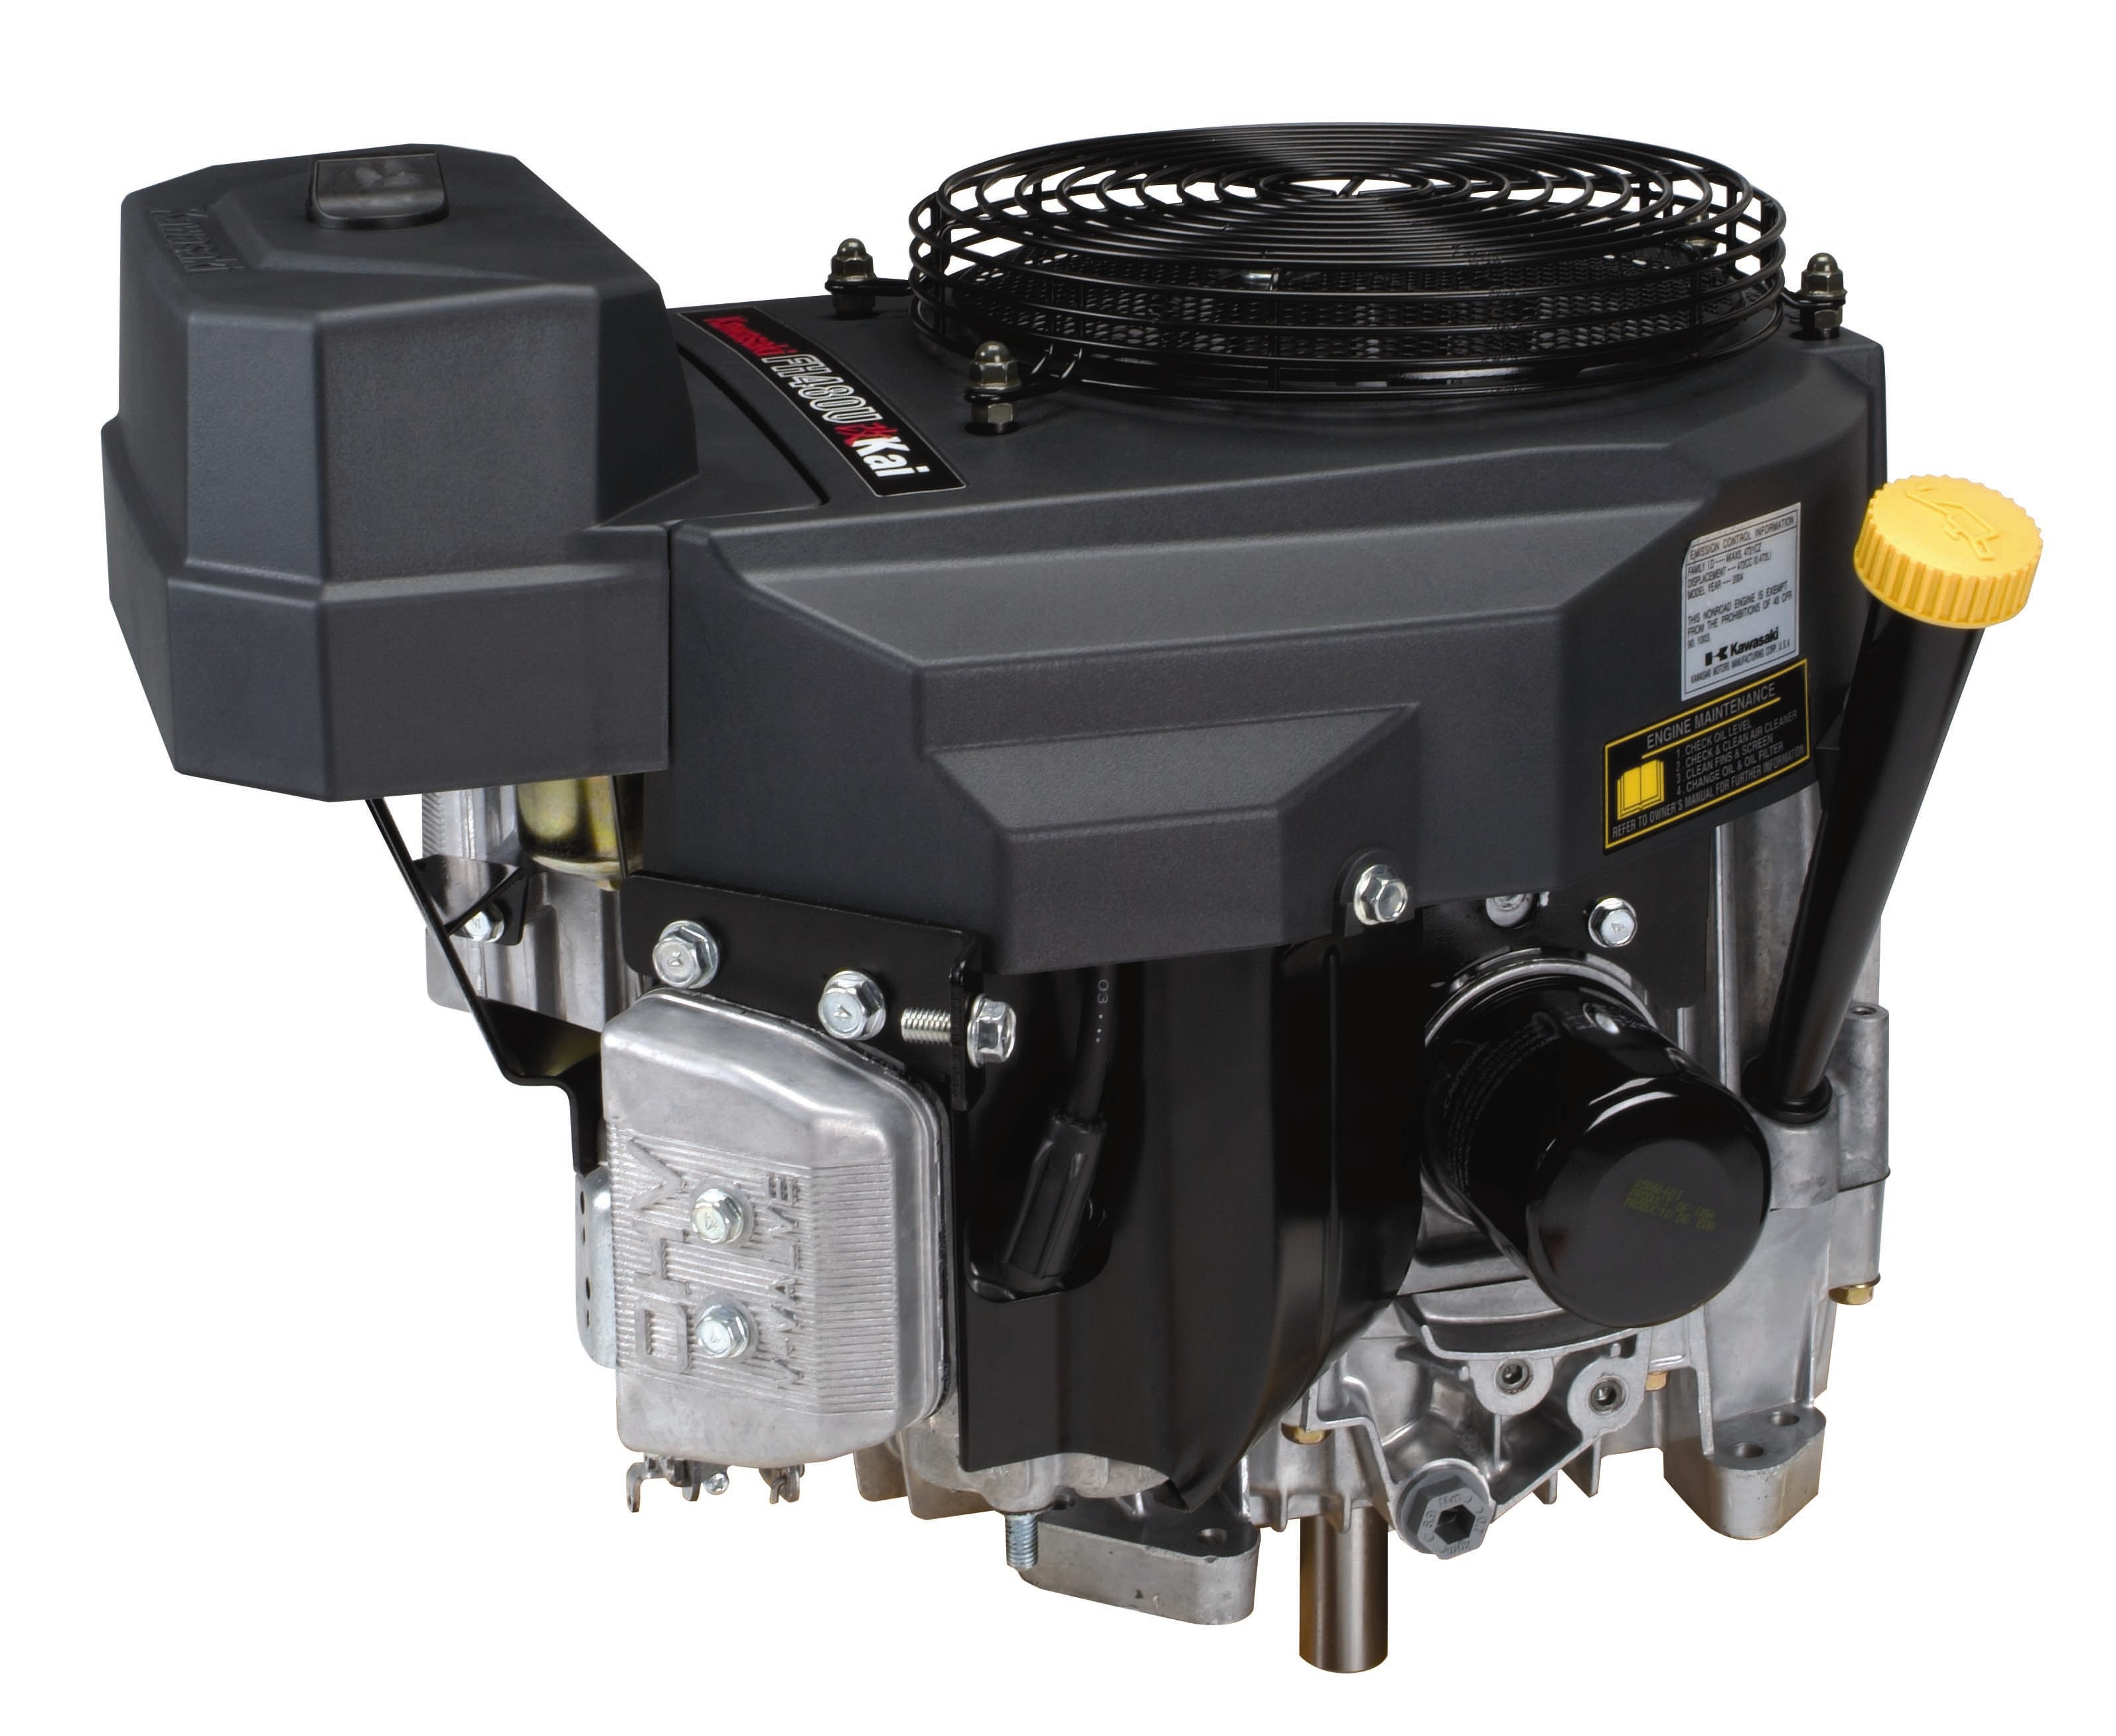 Kawasaki Small Engine FH480V/BS24 Parts, Diagrams, Videos & Repair Help ...